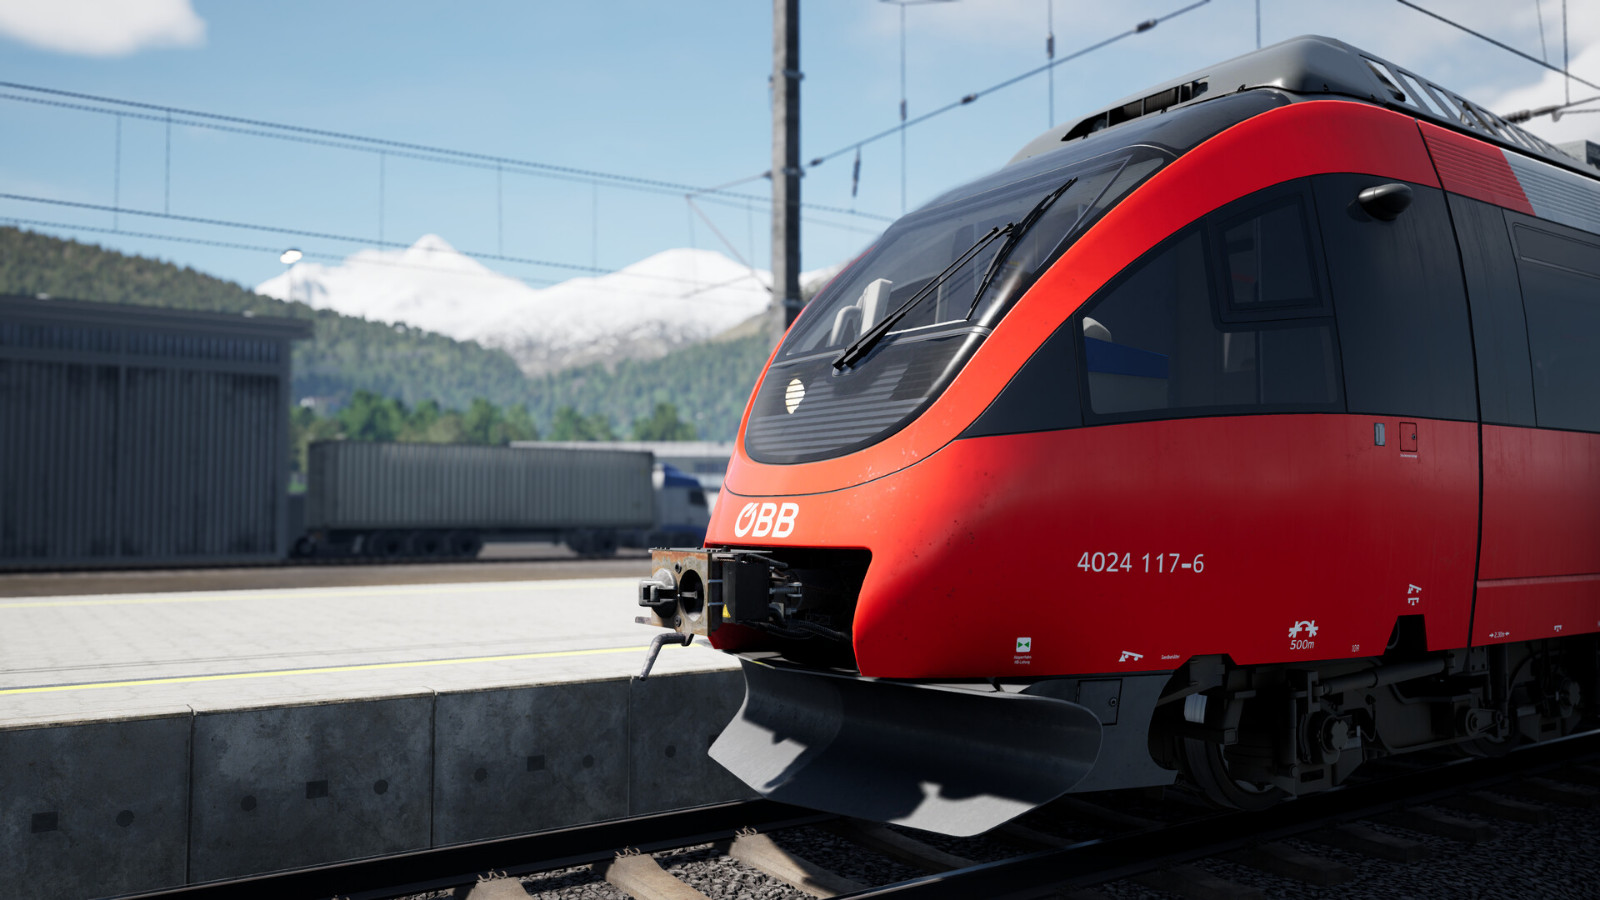 《模拟火车世界 4》Steam页面上线 9月27日发售